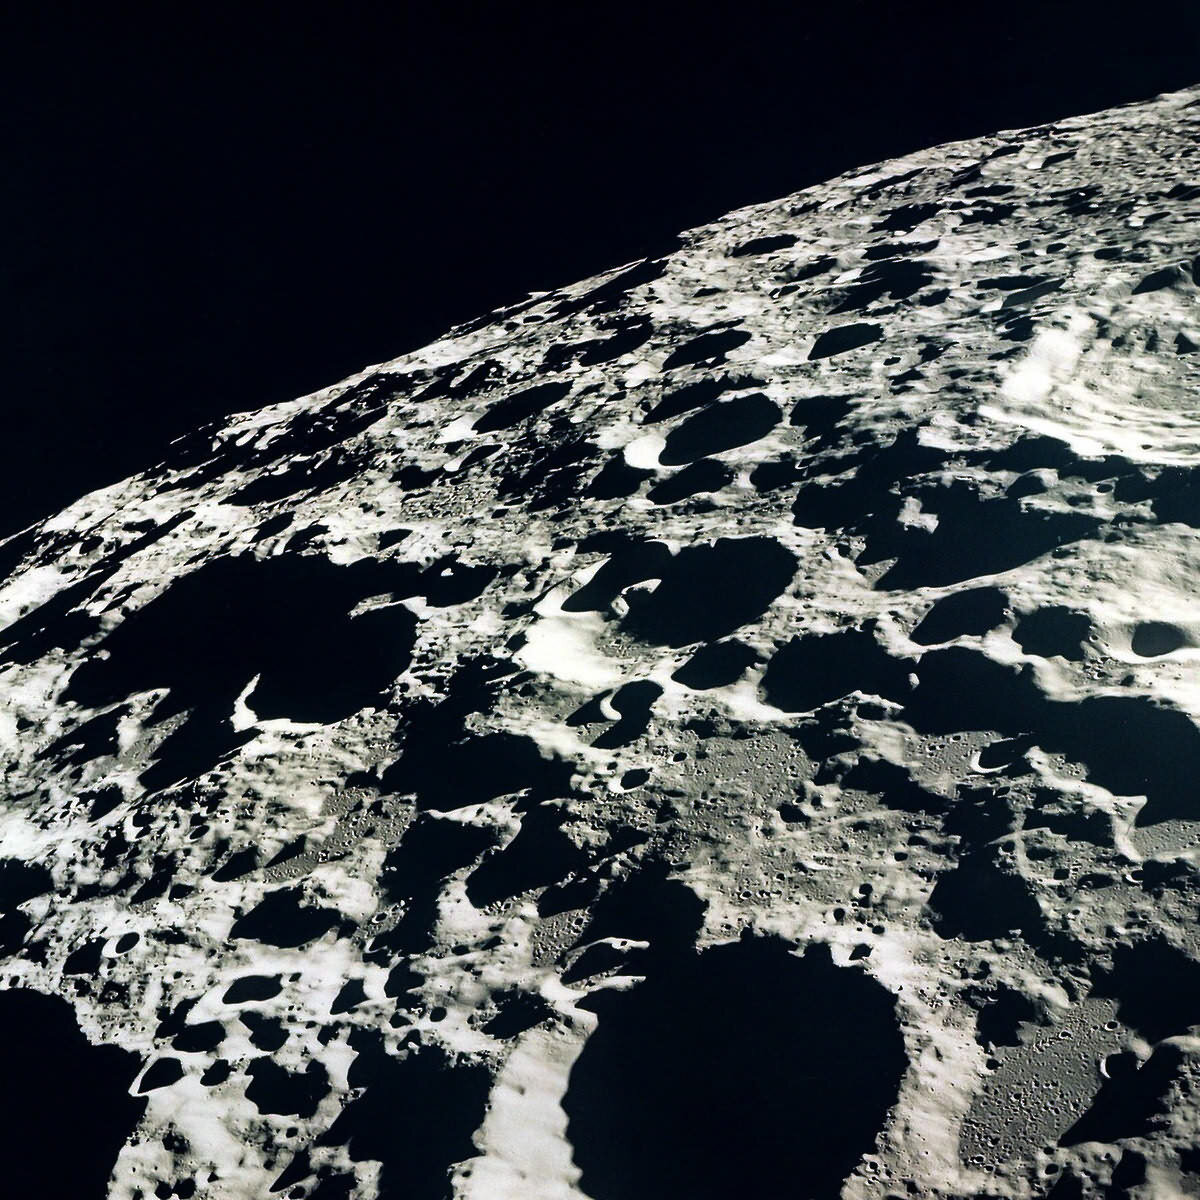 1. Обратная сторона луны
Обратная сторона Луны более гористая, по сравнению с той, которая видна с Земли.